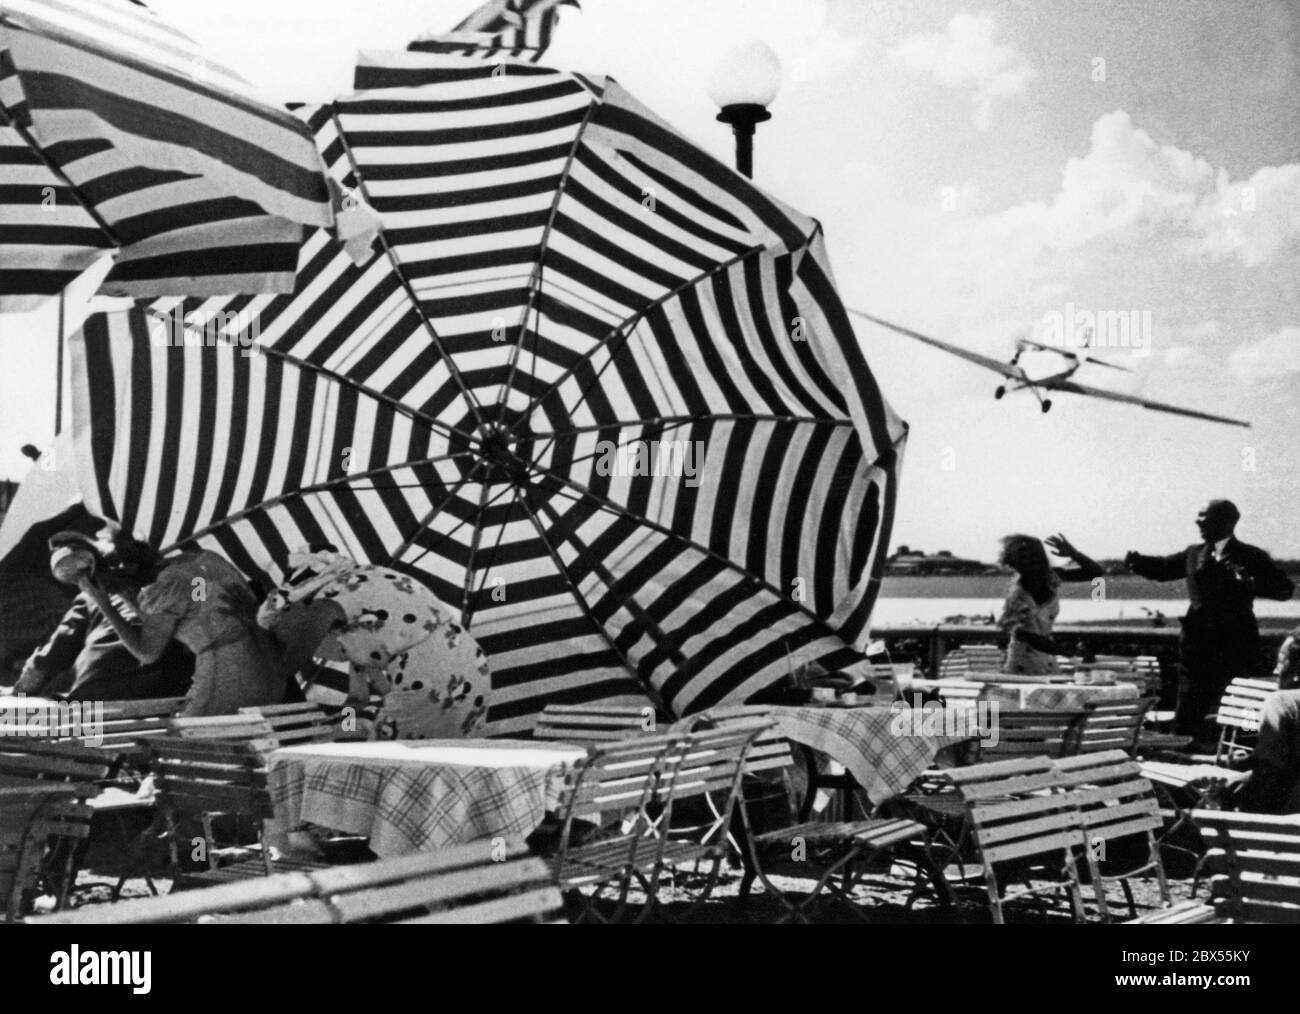 L'ancien pilote de chasse Ernst Udet, après Manfred von Richthofen, l'as de vol le plus réussi de la première Guerre mondiale, vole des cascades au-dessus de l'aéroport de Berlin Tempelhof. La photo montre des scènes d'un tournage pour le film 'Miracle of Flight' dans lequel Udet renverrait des parasols avec ses ailes. Banque D'Images